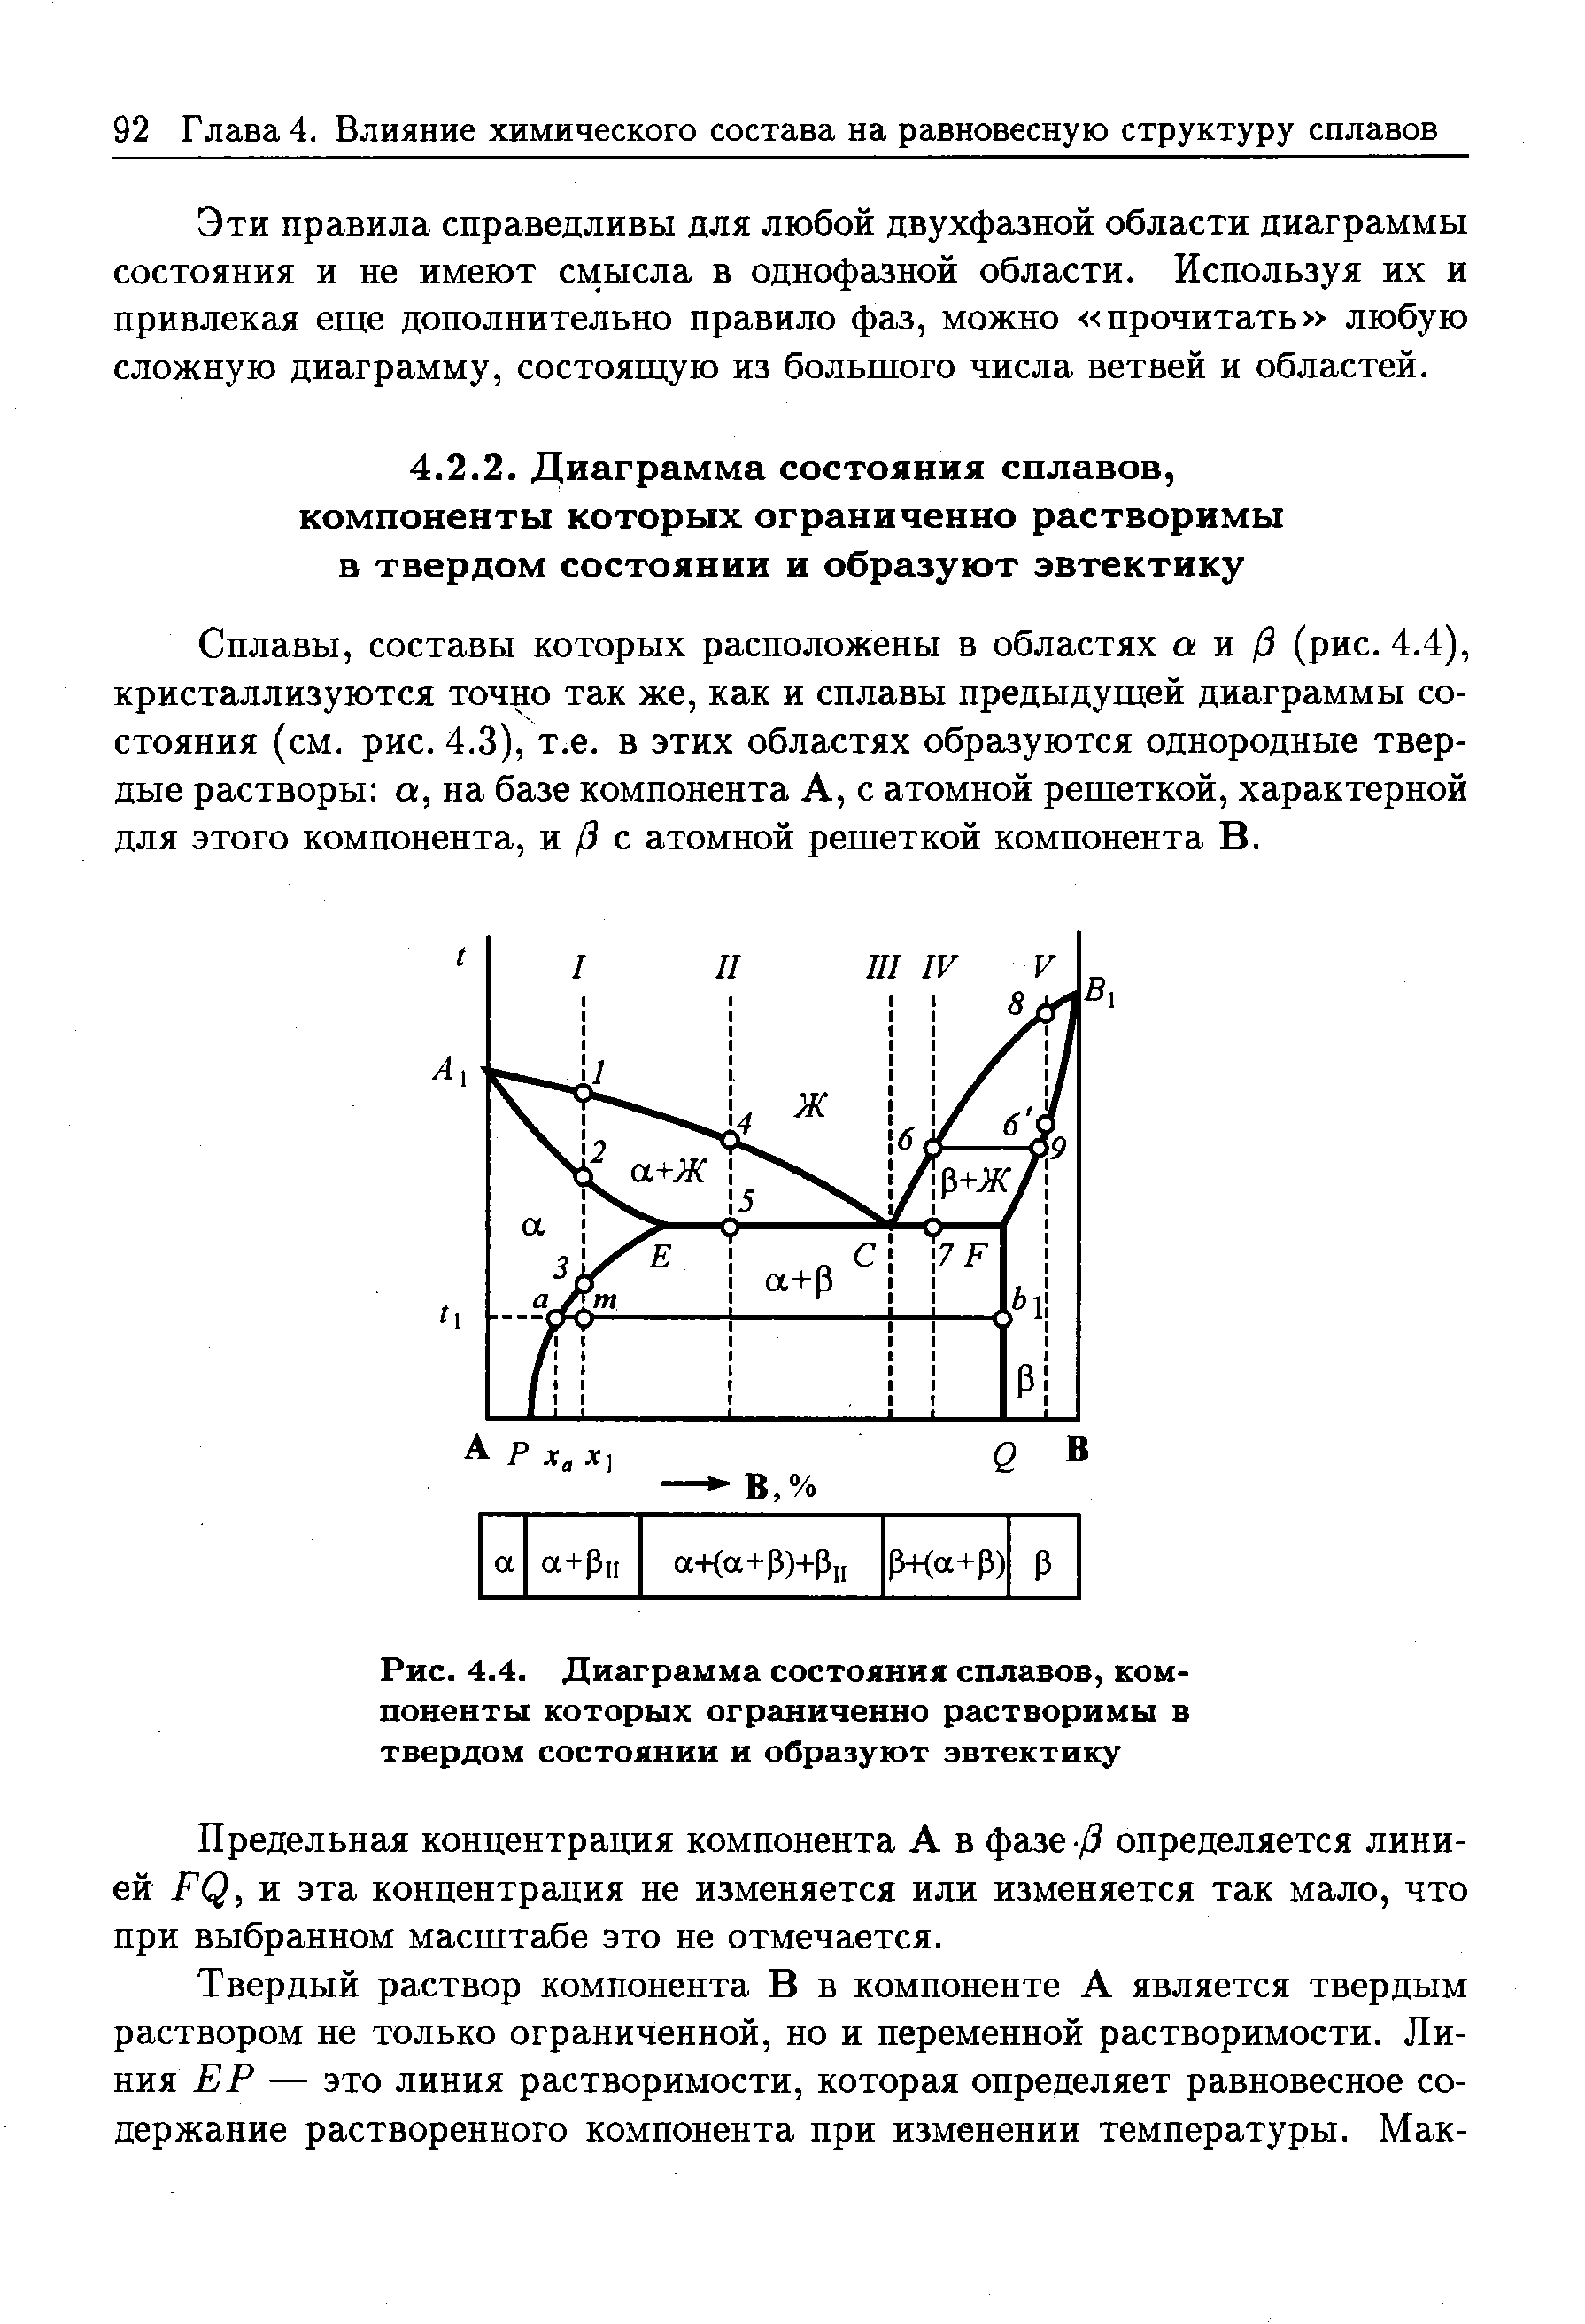 Сплавы, составы которых расположены в областях а и /3 (рис. 4.4), кристаллизуются точно так же, как и сплавы предыдущей диаграммы состояния (см. рис. 4.3), т.е. в этих областях образуются однородные твердые растворы а, на базе компонента А, с атомной решеткой, характерной для этого компонента, и /3 с атомной решеткой компонента В.
